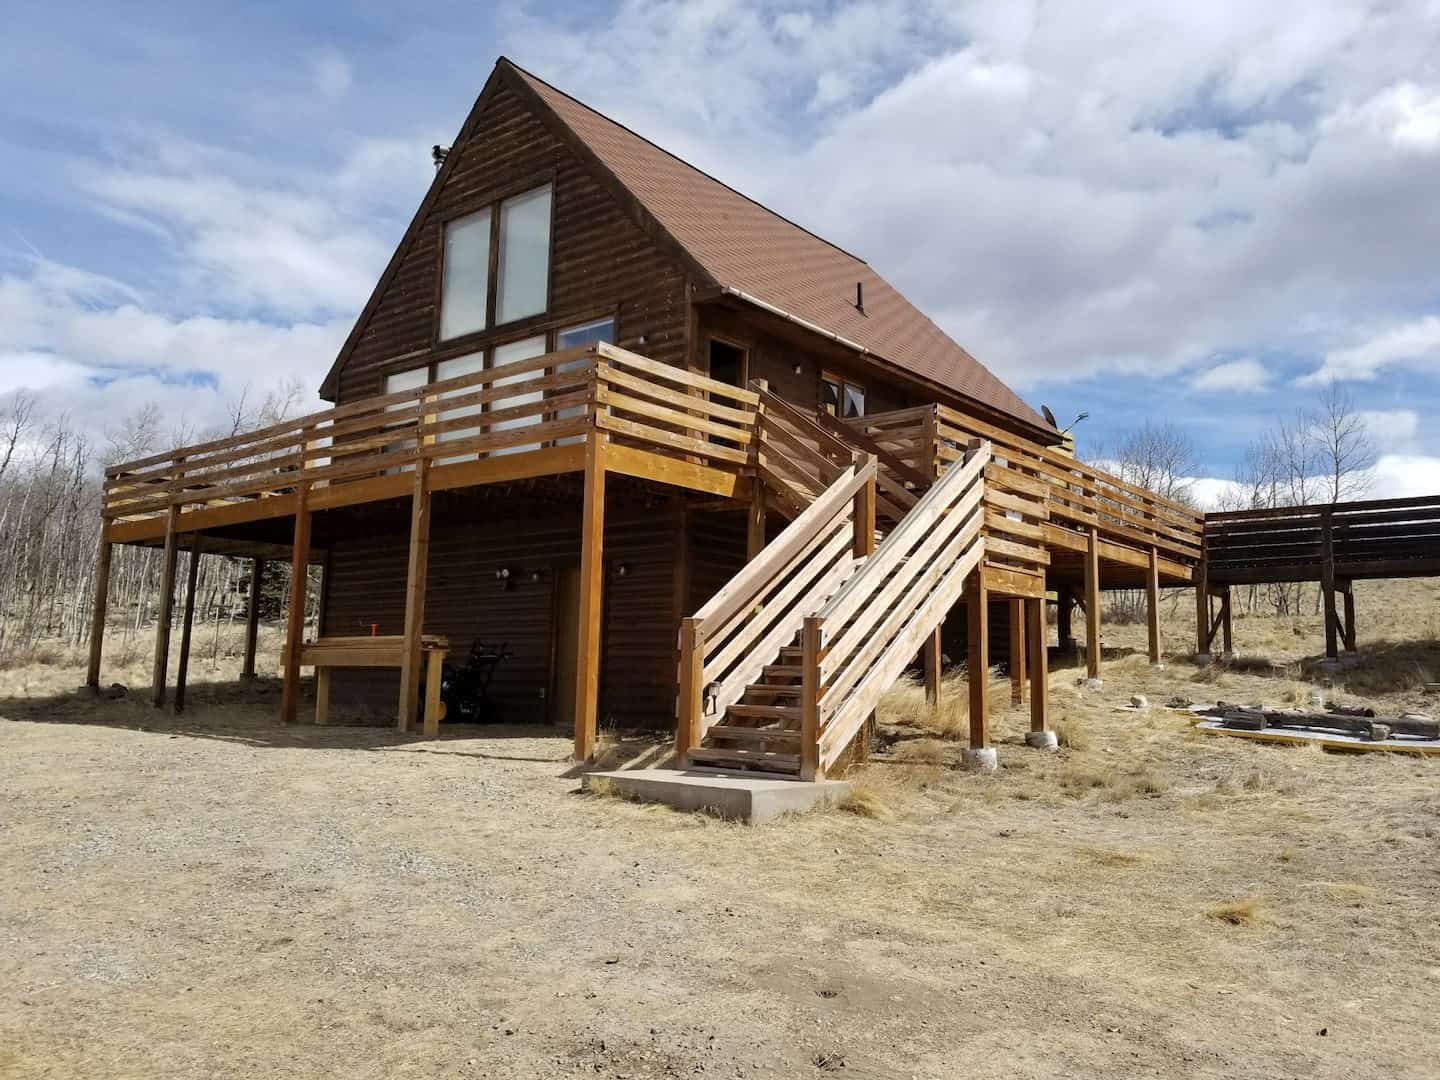 Image of cabin rental in Colorado